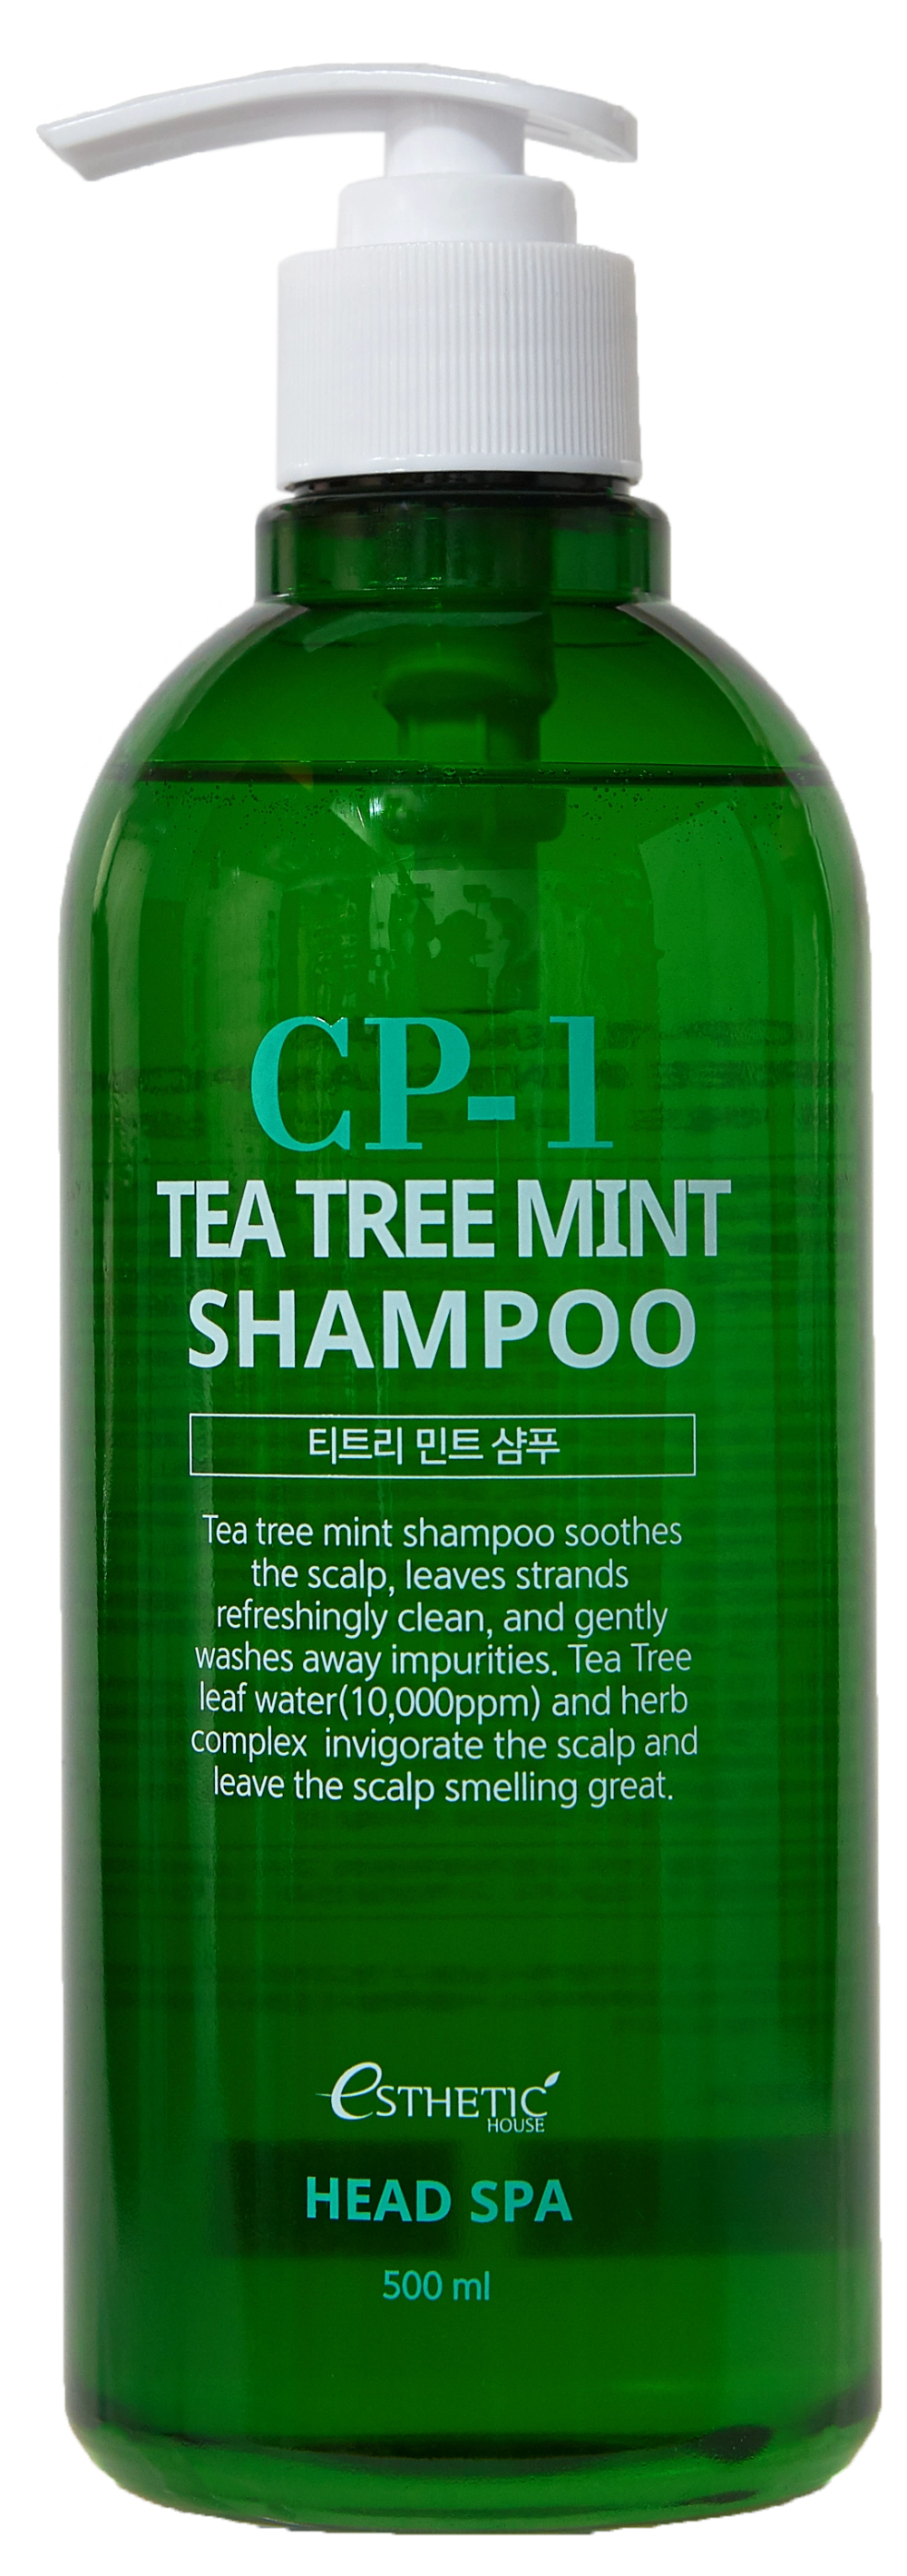 Заспокійливий освіжаючий шампунь для волосся - Esthetic House CP-1 Tea Tree Shampoo, 500 мл - фото N1